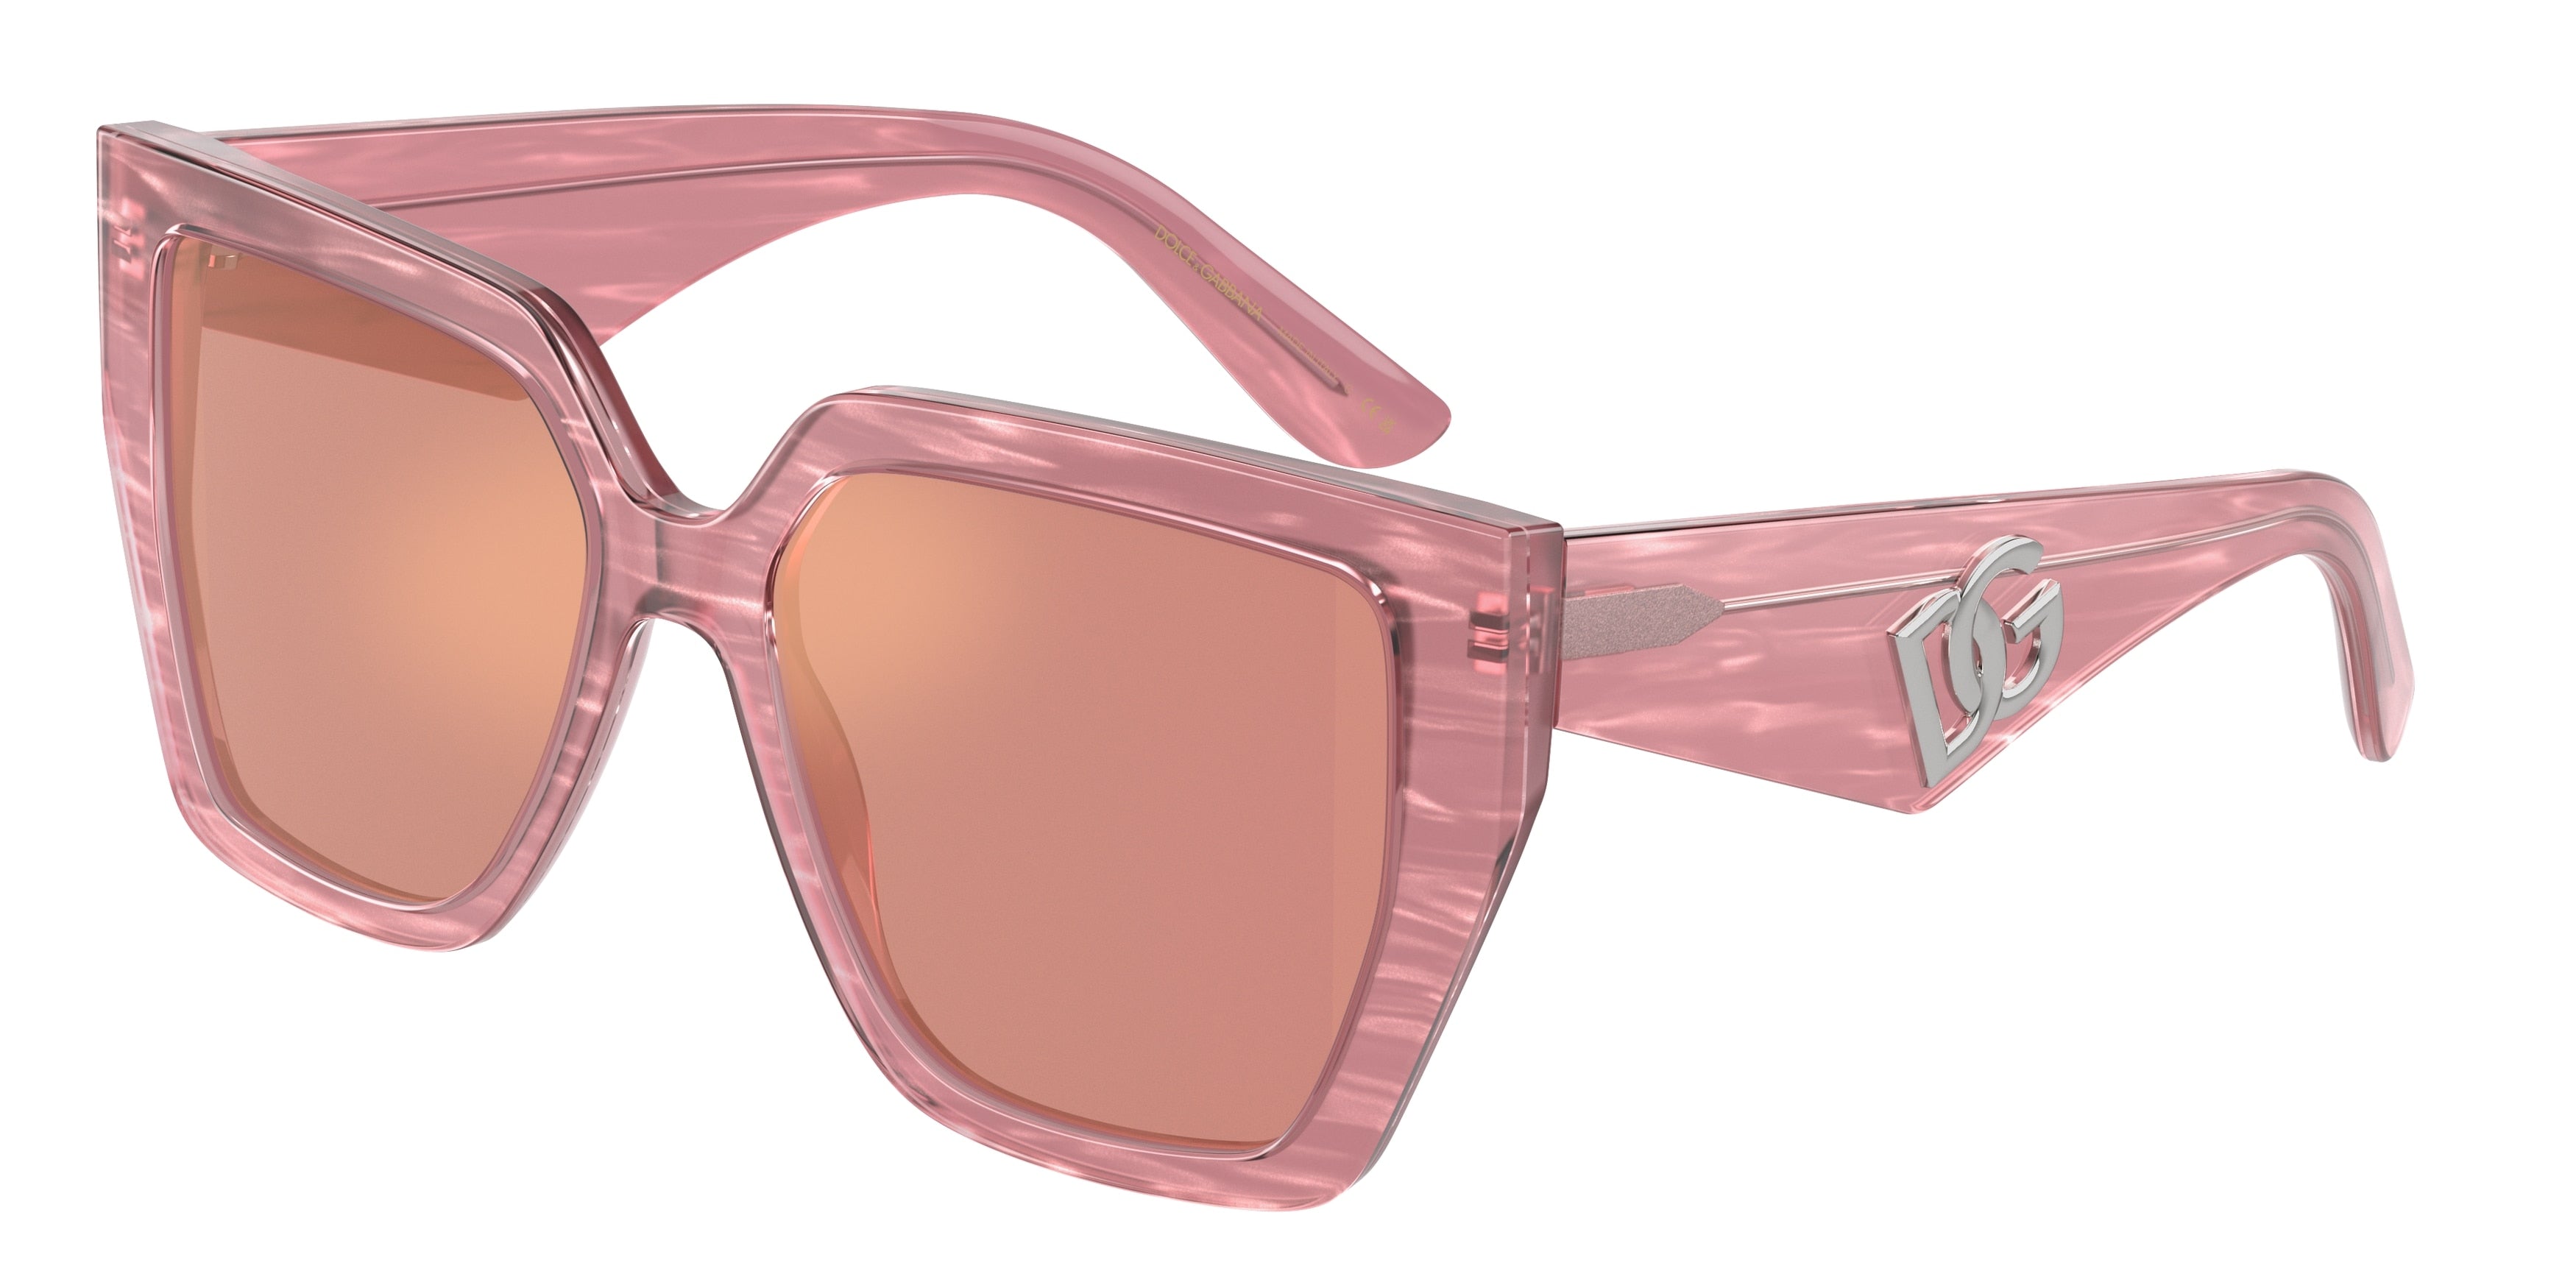 DOLCE & GABBANA DG4438 Square Sunglasses  3405A4-Fleur Pink 55-145-17 - Color Map Pink